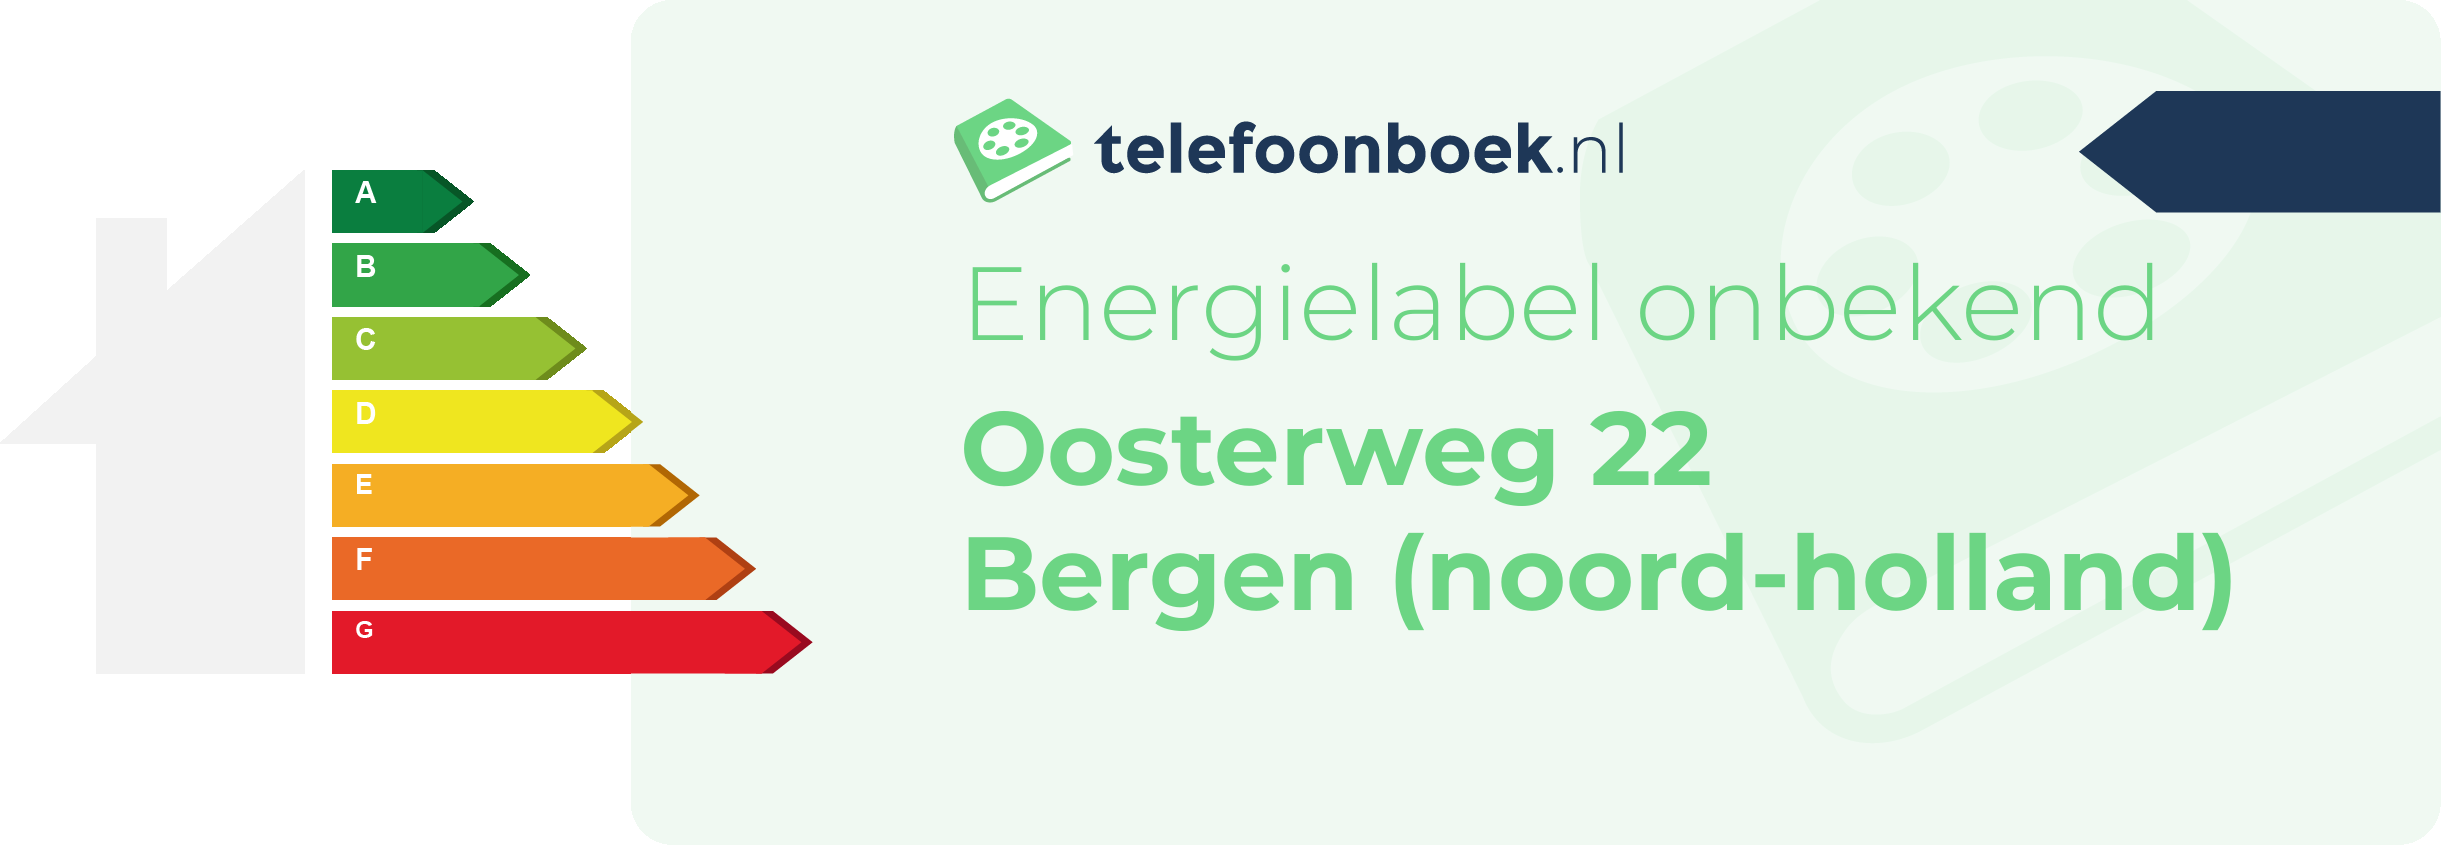 Energielabel Oosterweg 22 Bergen (Noord-Holland)